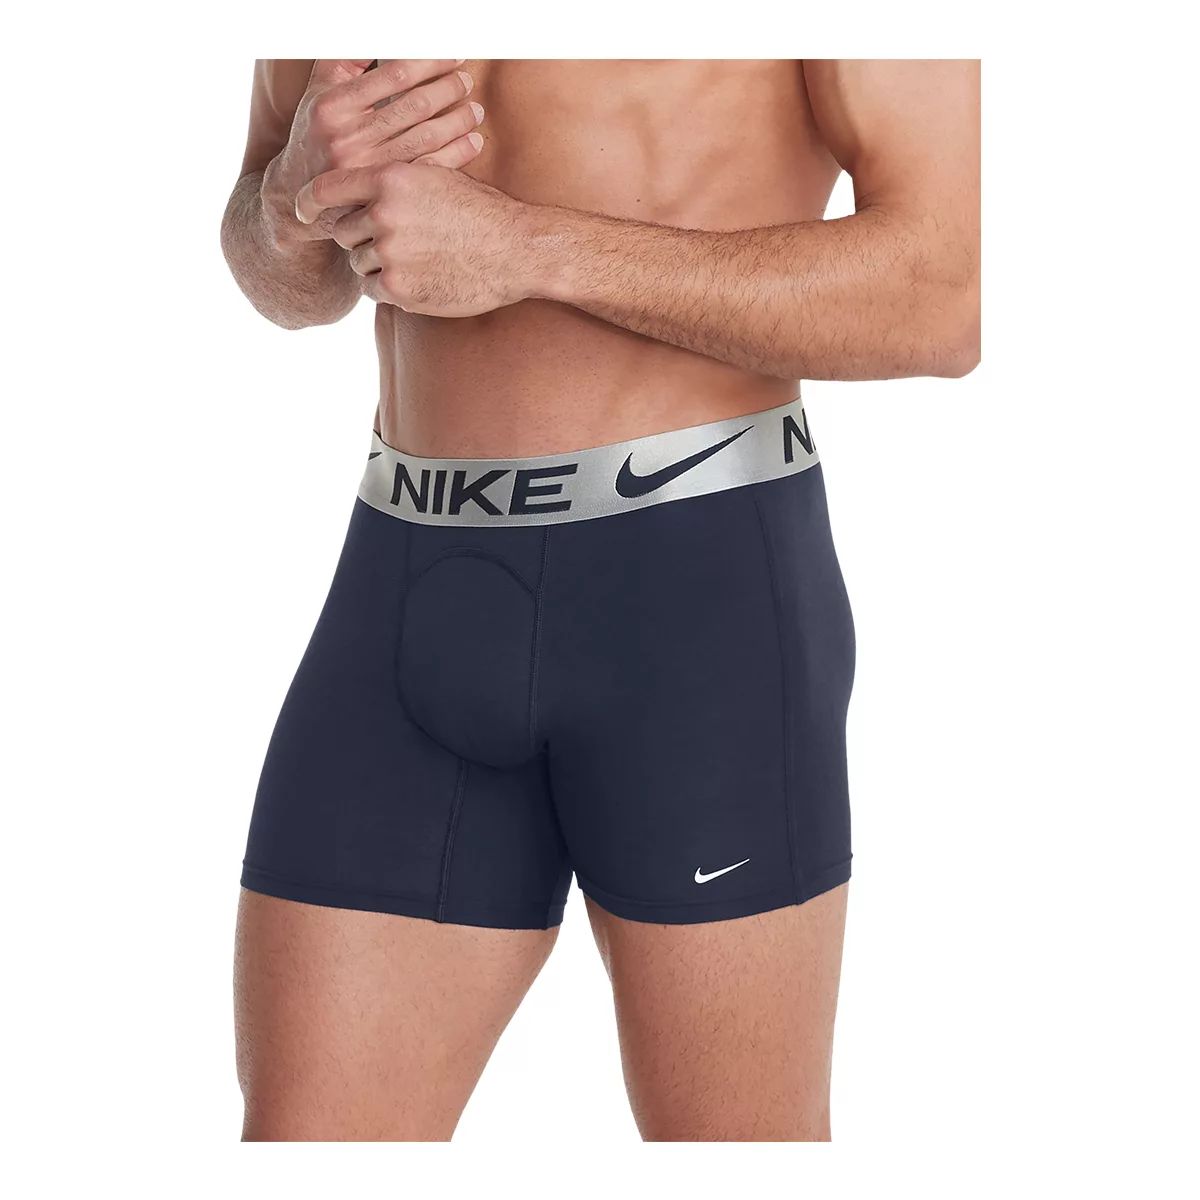 Nike Dri-Fit Luxe Men's Boxer Brief, Workout Underwear